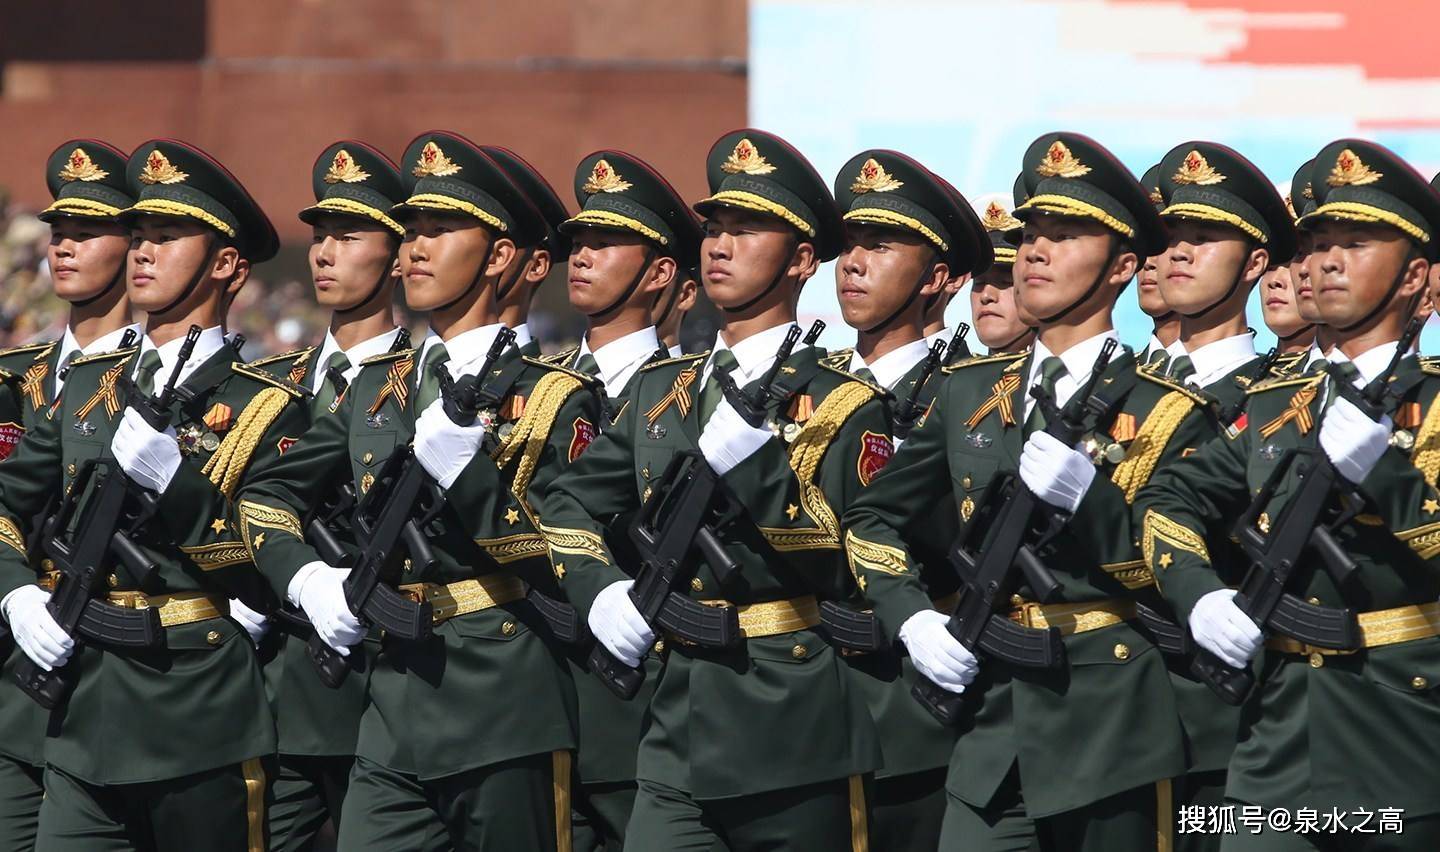 当地时间17日晚,莫斯科红场附近,中国人民解放军三军仪仗队惊喜现身